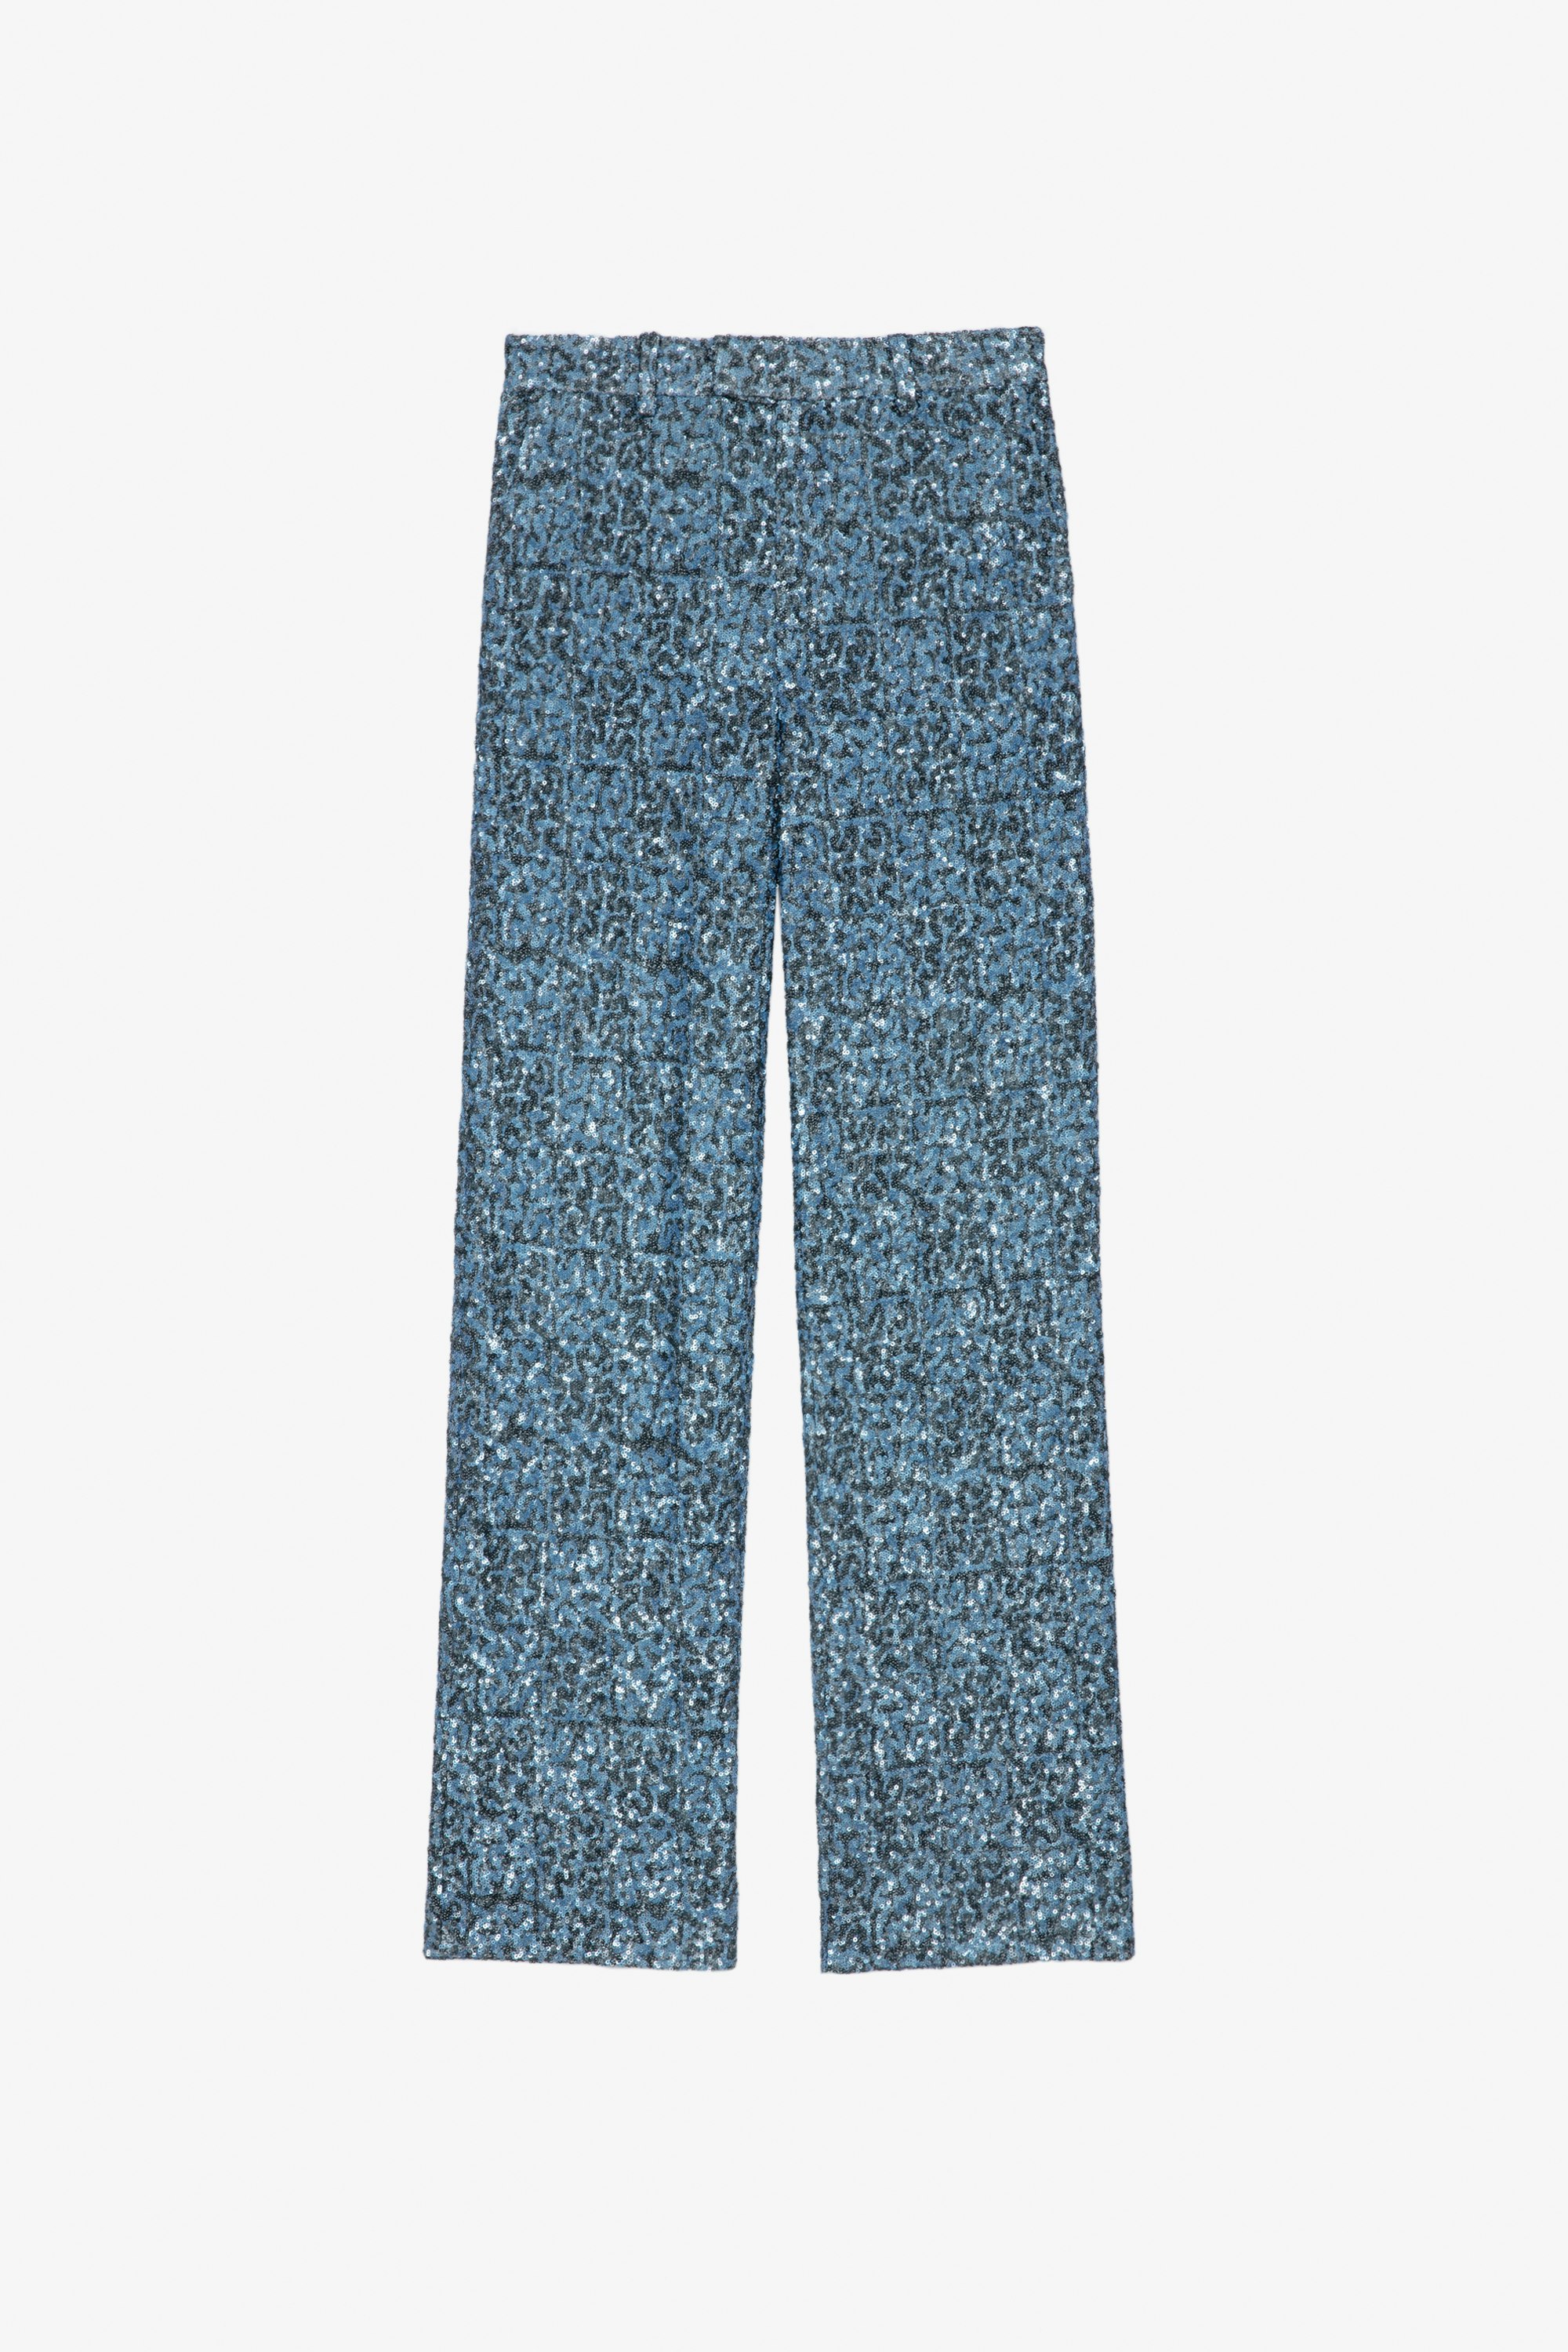 Pantalon Peter Pantalon large bleu orné de sequins Femme